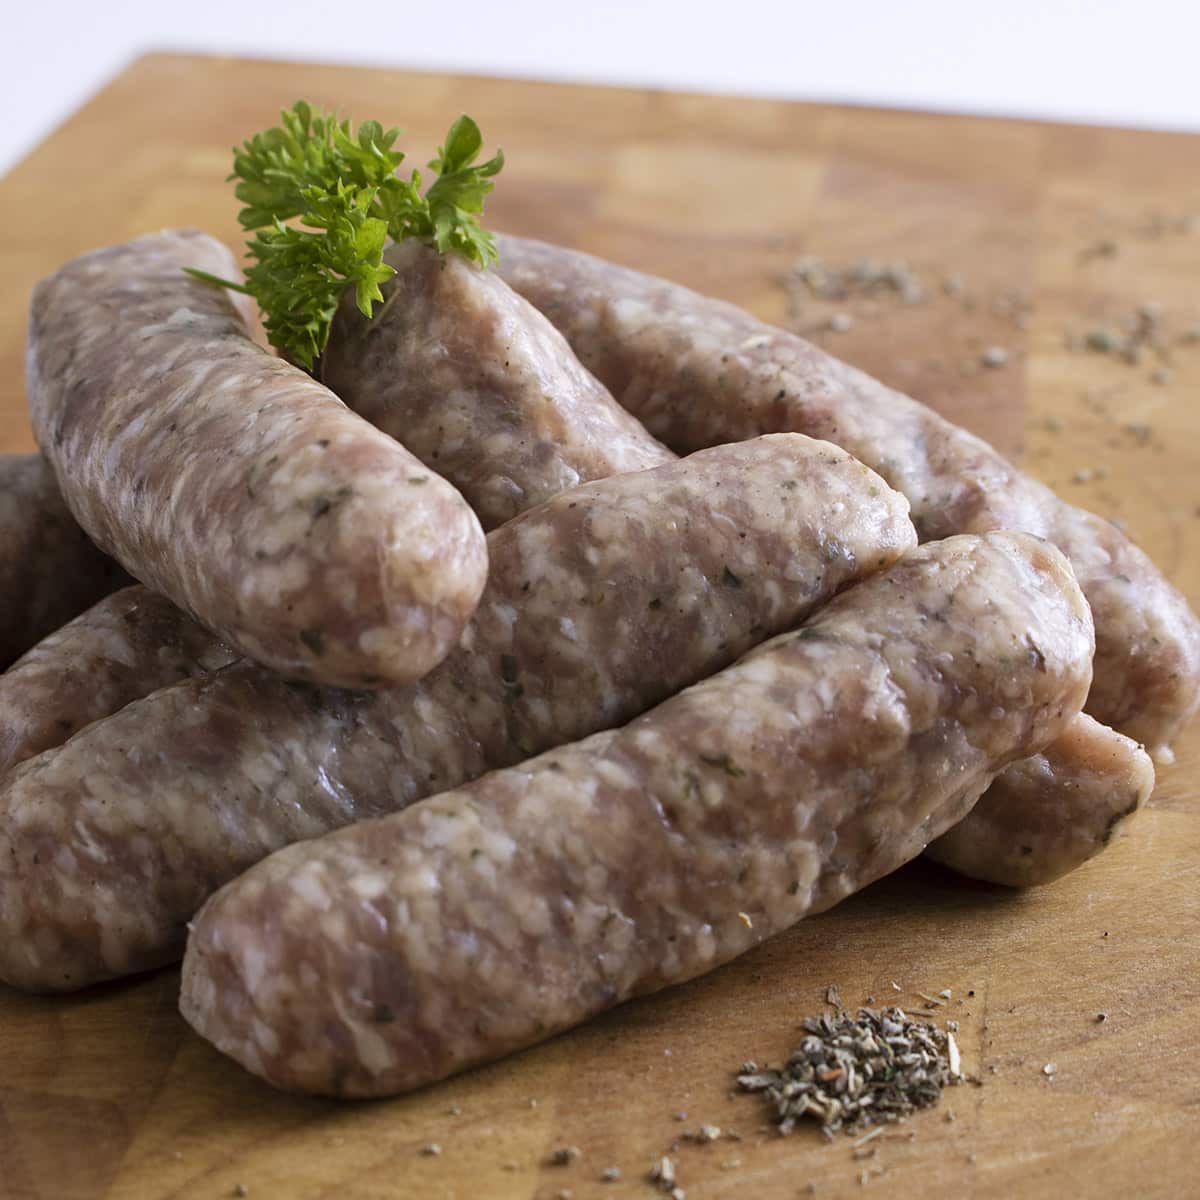 Lincolnshire sausage